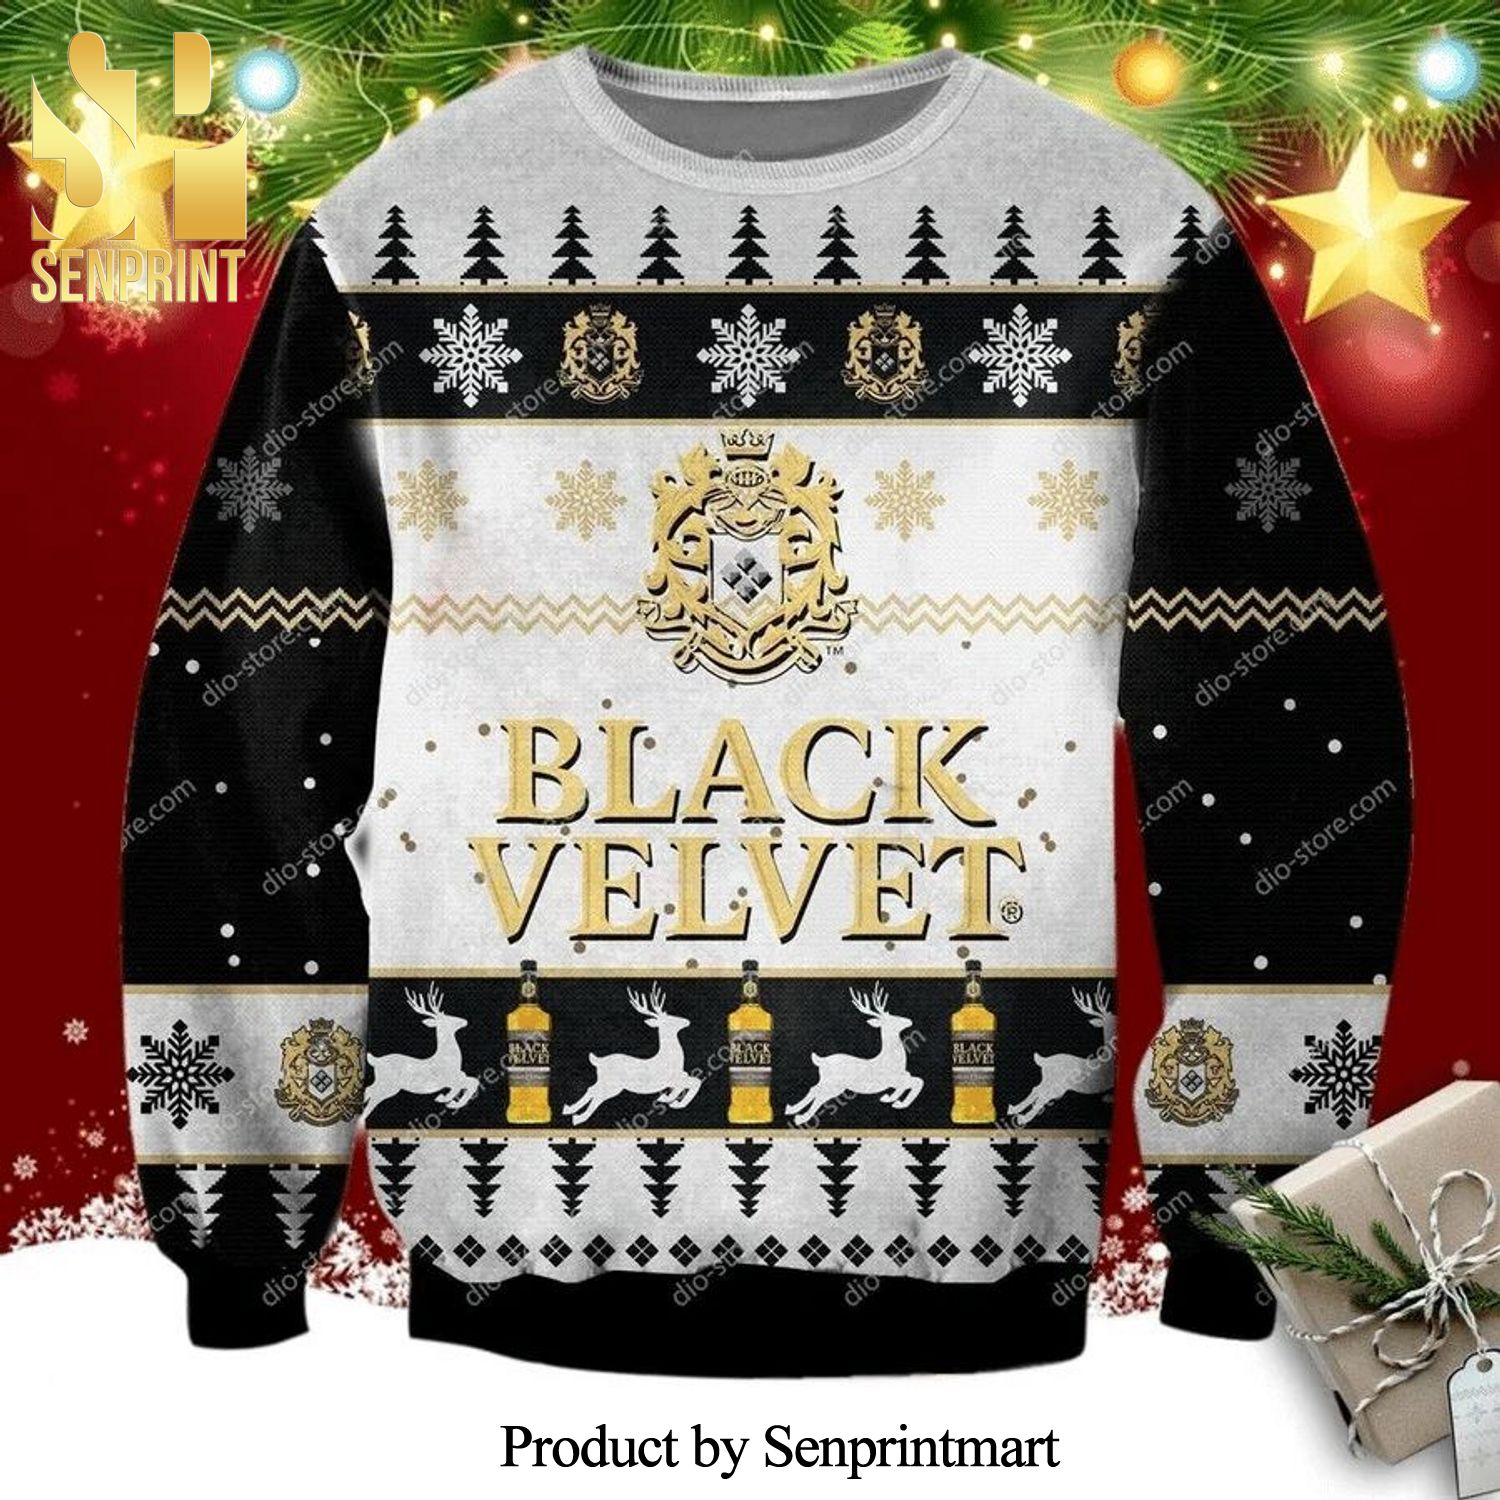 Black Velvet Canadian Whisky Knitted Ugly Christmas Sweater